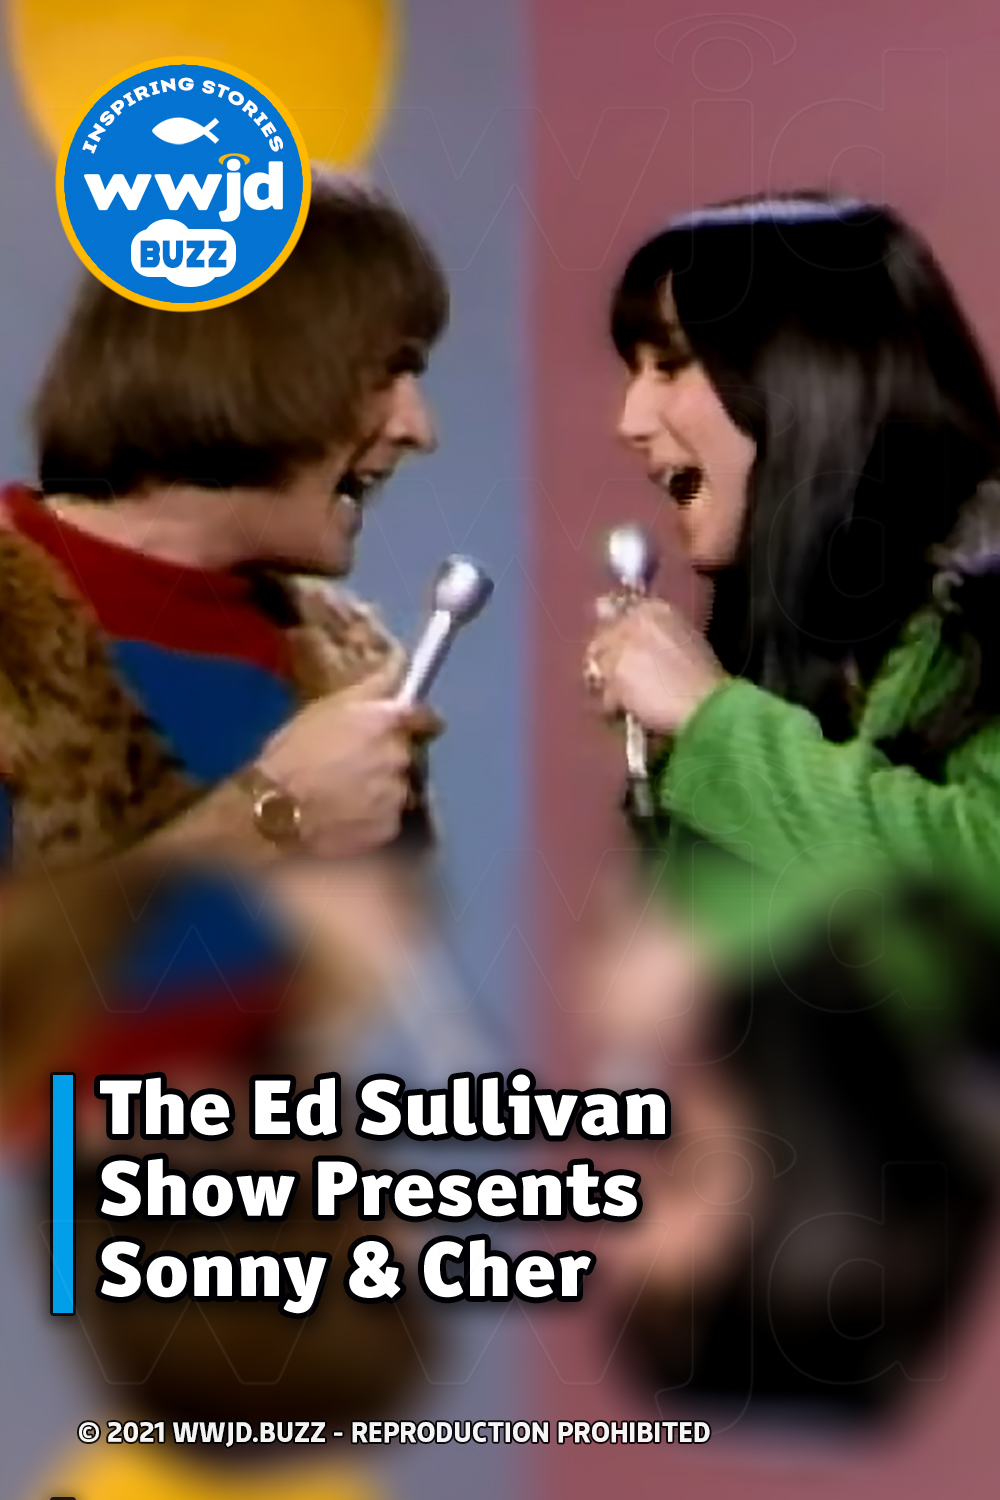 The Ed Sullivan Show Presents Sonny & Cher